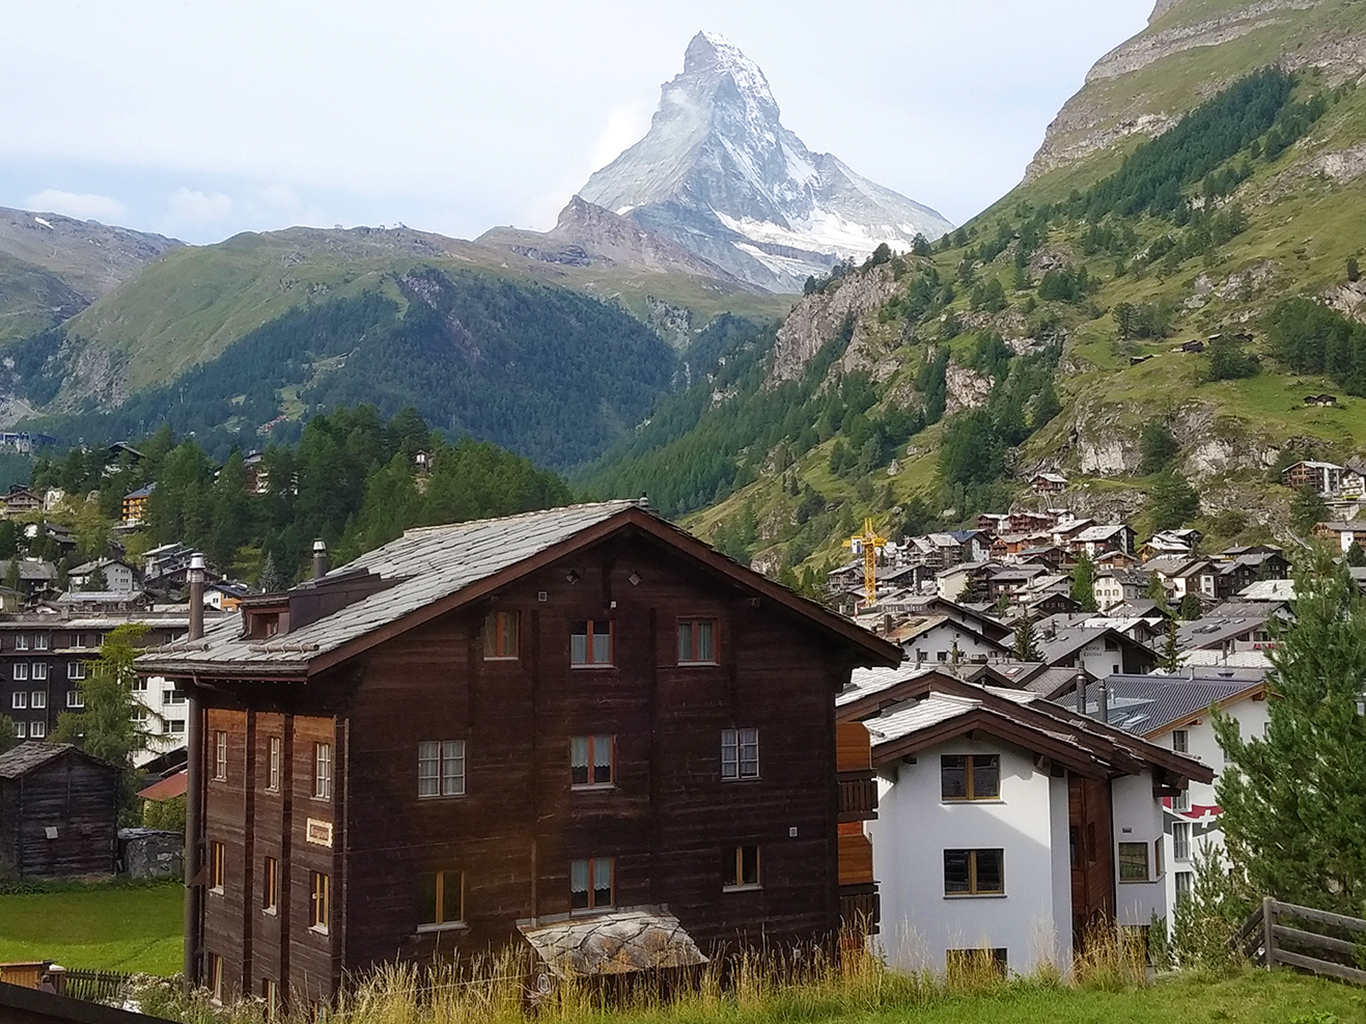 Horské středisko Zermatt na úpatí hory Matterhorn